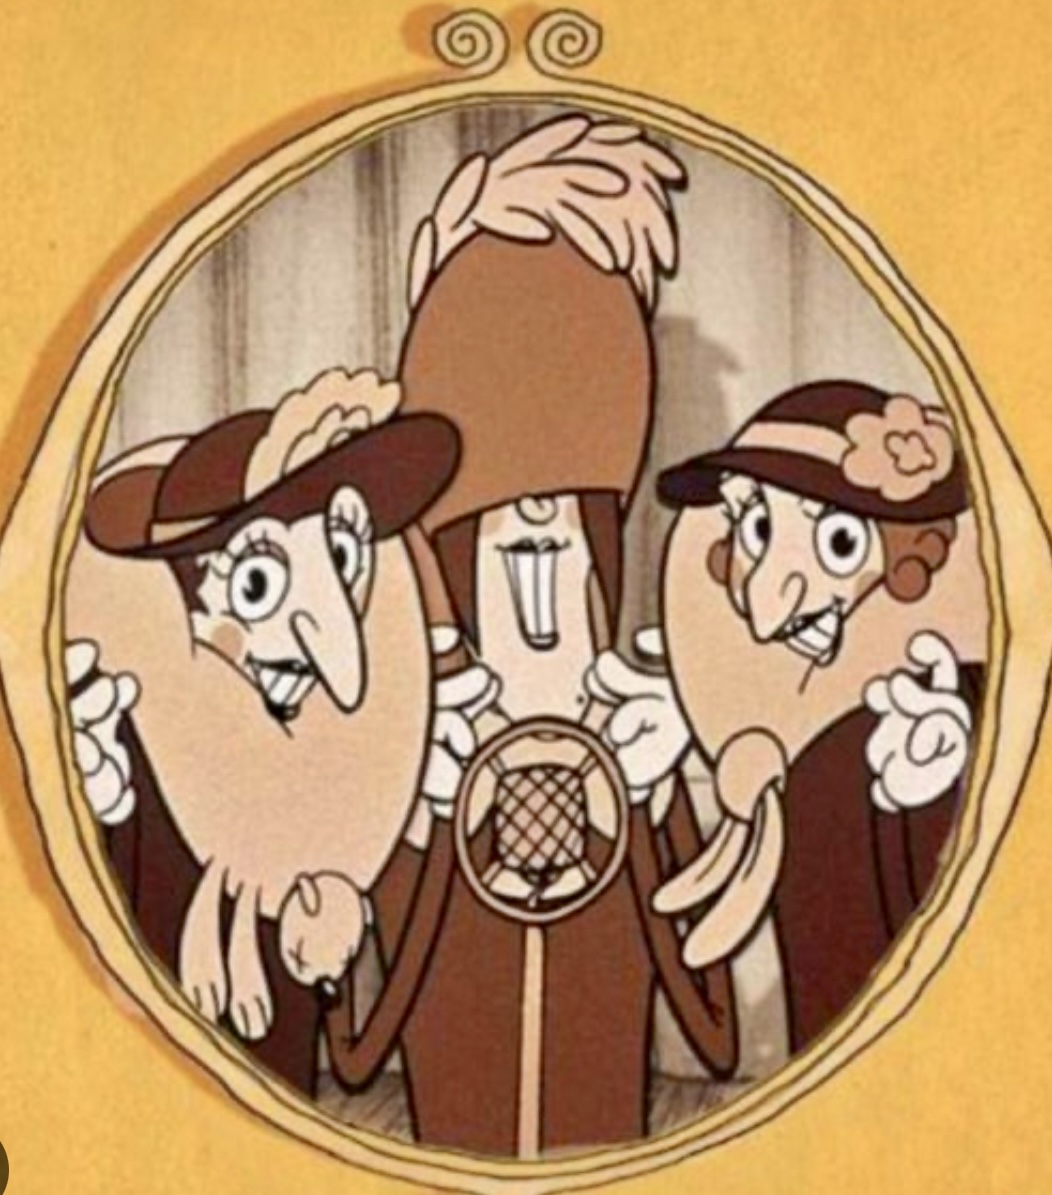 Un film d'animation mettant en scène un groupe de personnes portant des chapeaux.